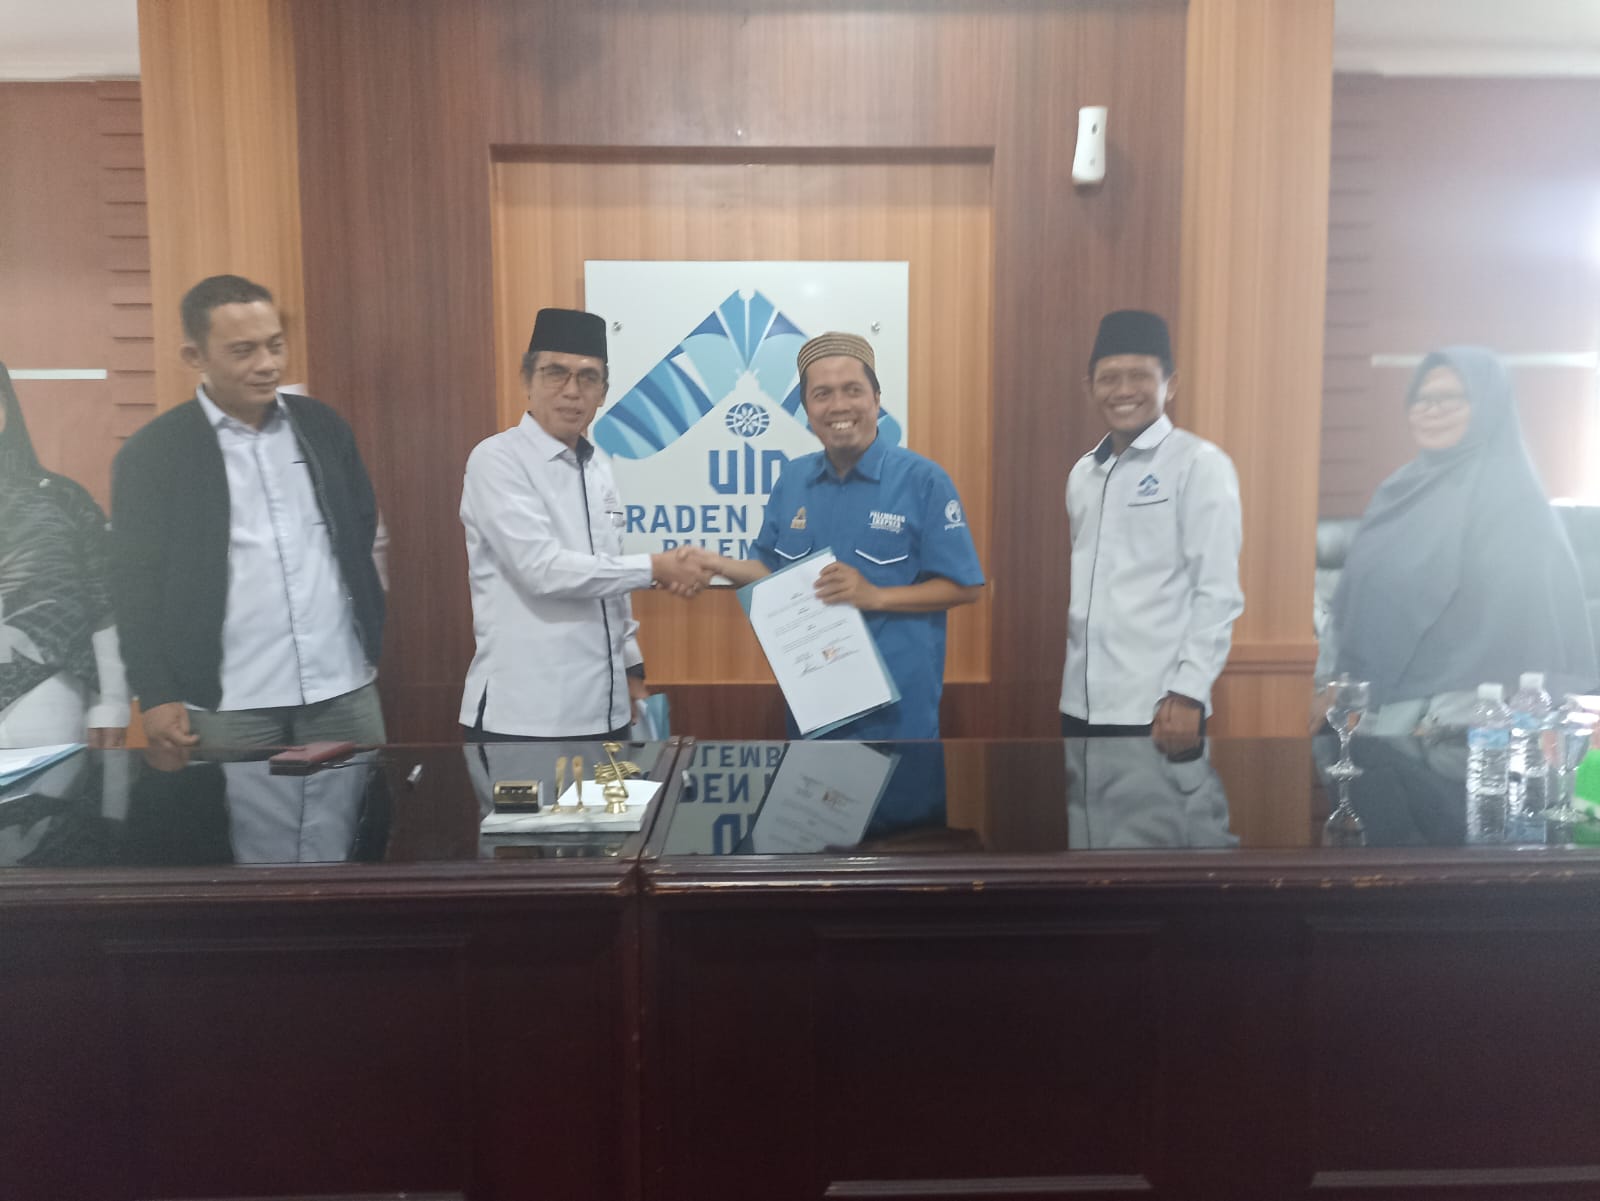  FISIP UIN Raden Fatah Resmi Terapkan MBKM, Begini Teknis Kampus Merdeka